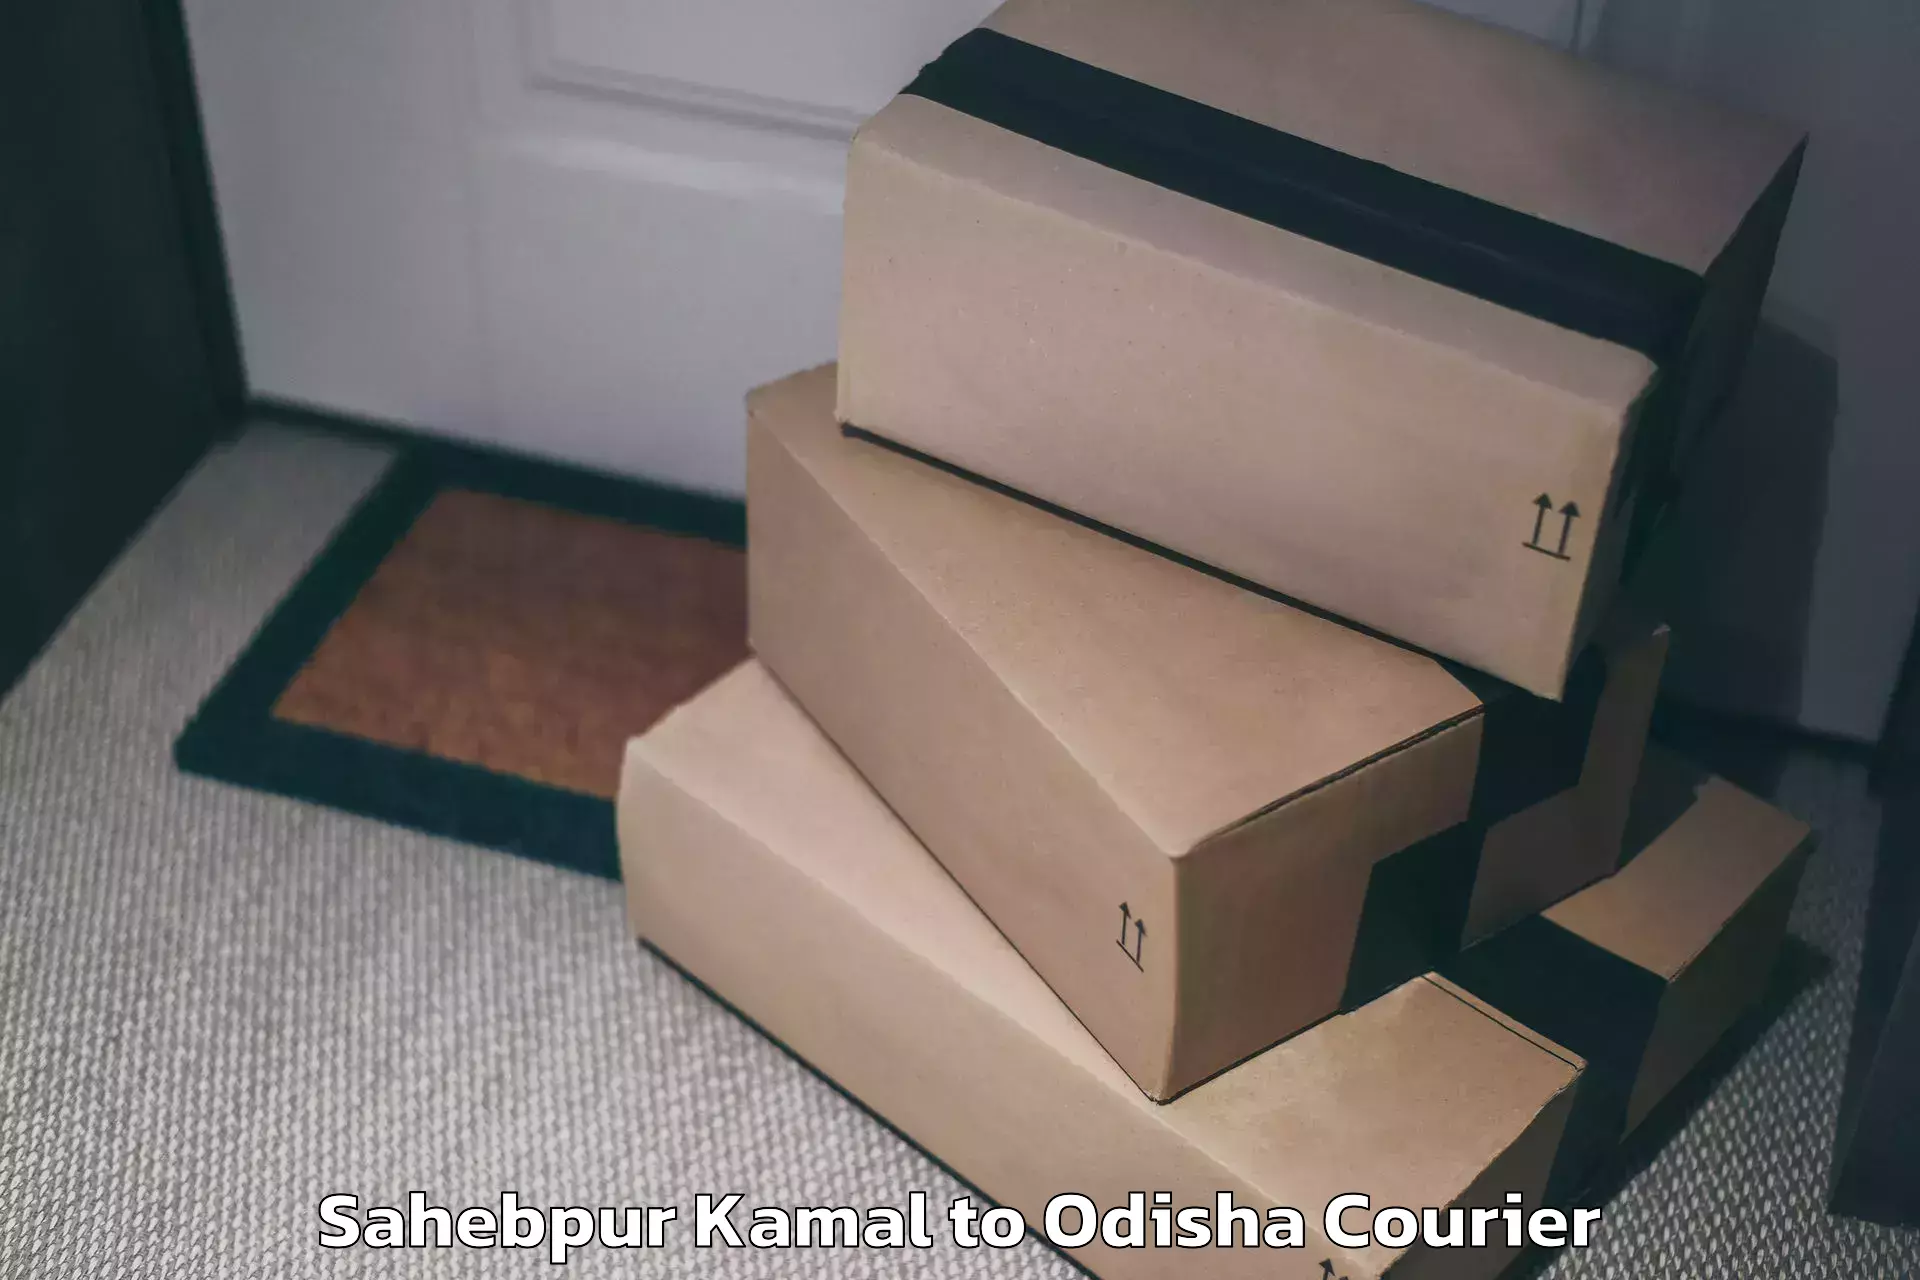 Luggage forwarding service Sahebpur Kamal to Kantamal